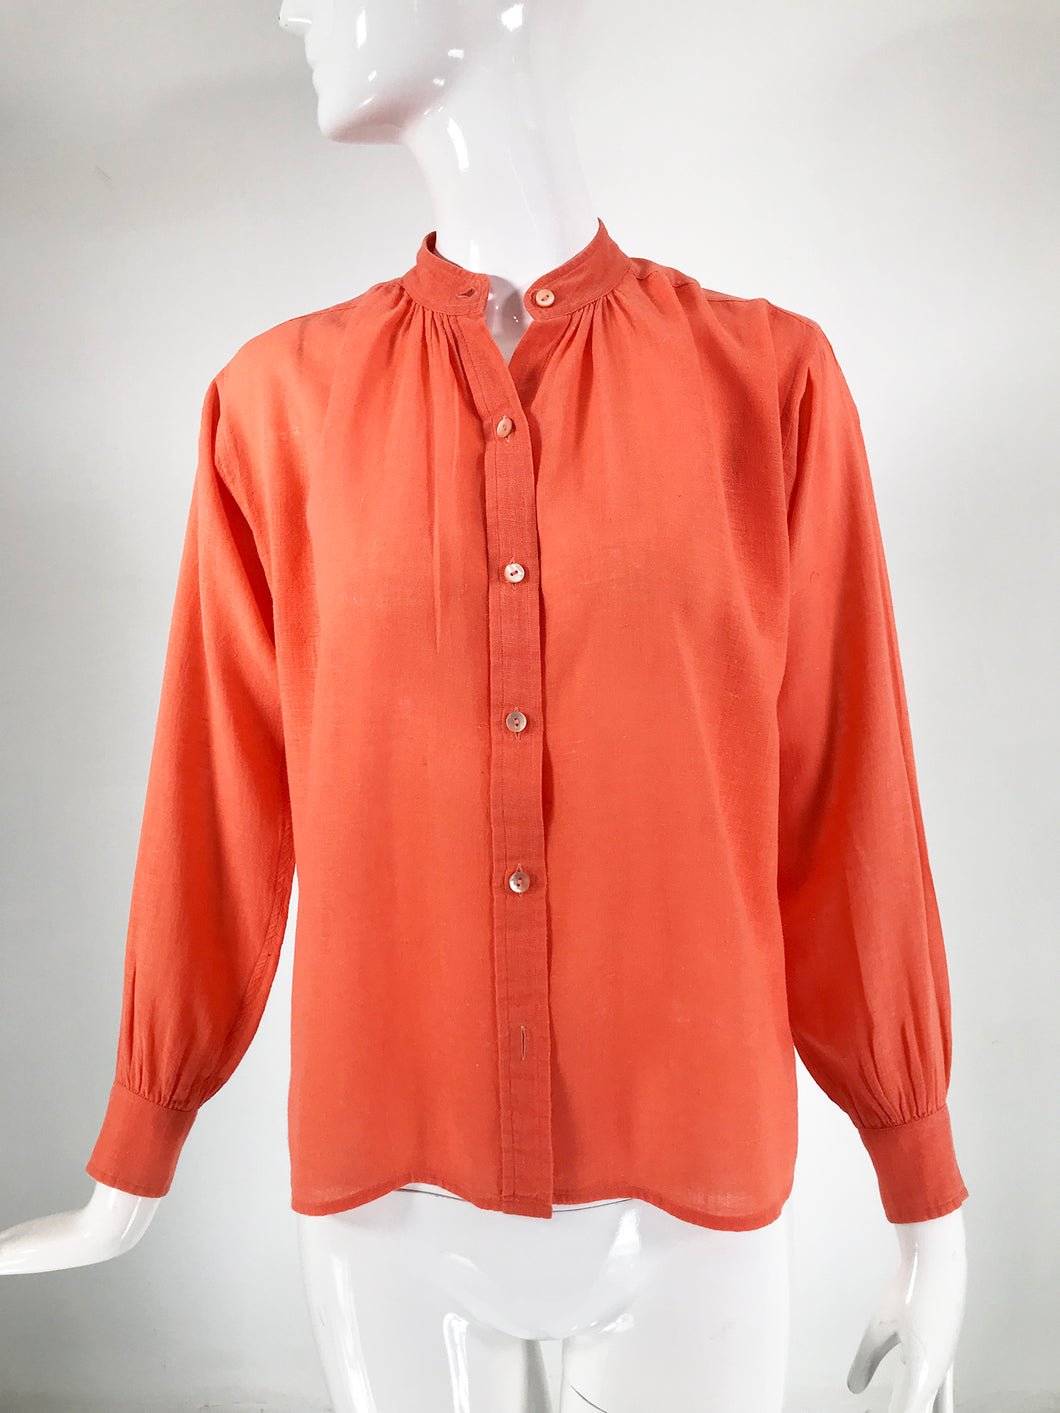 Yves Saint Laurent Rive Gauche Orange Cotton Gauze Blouse 1960s